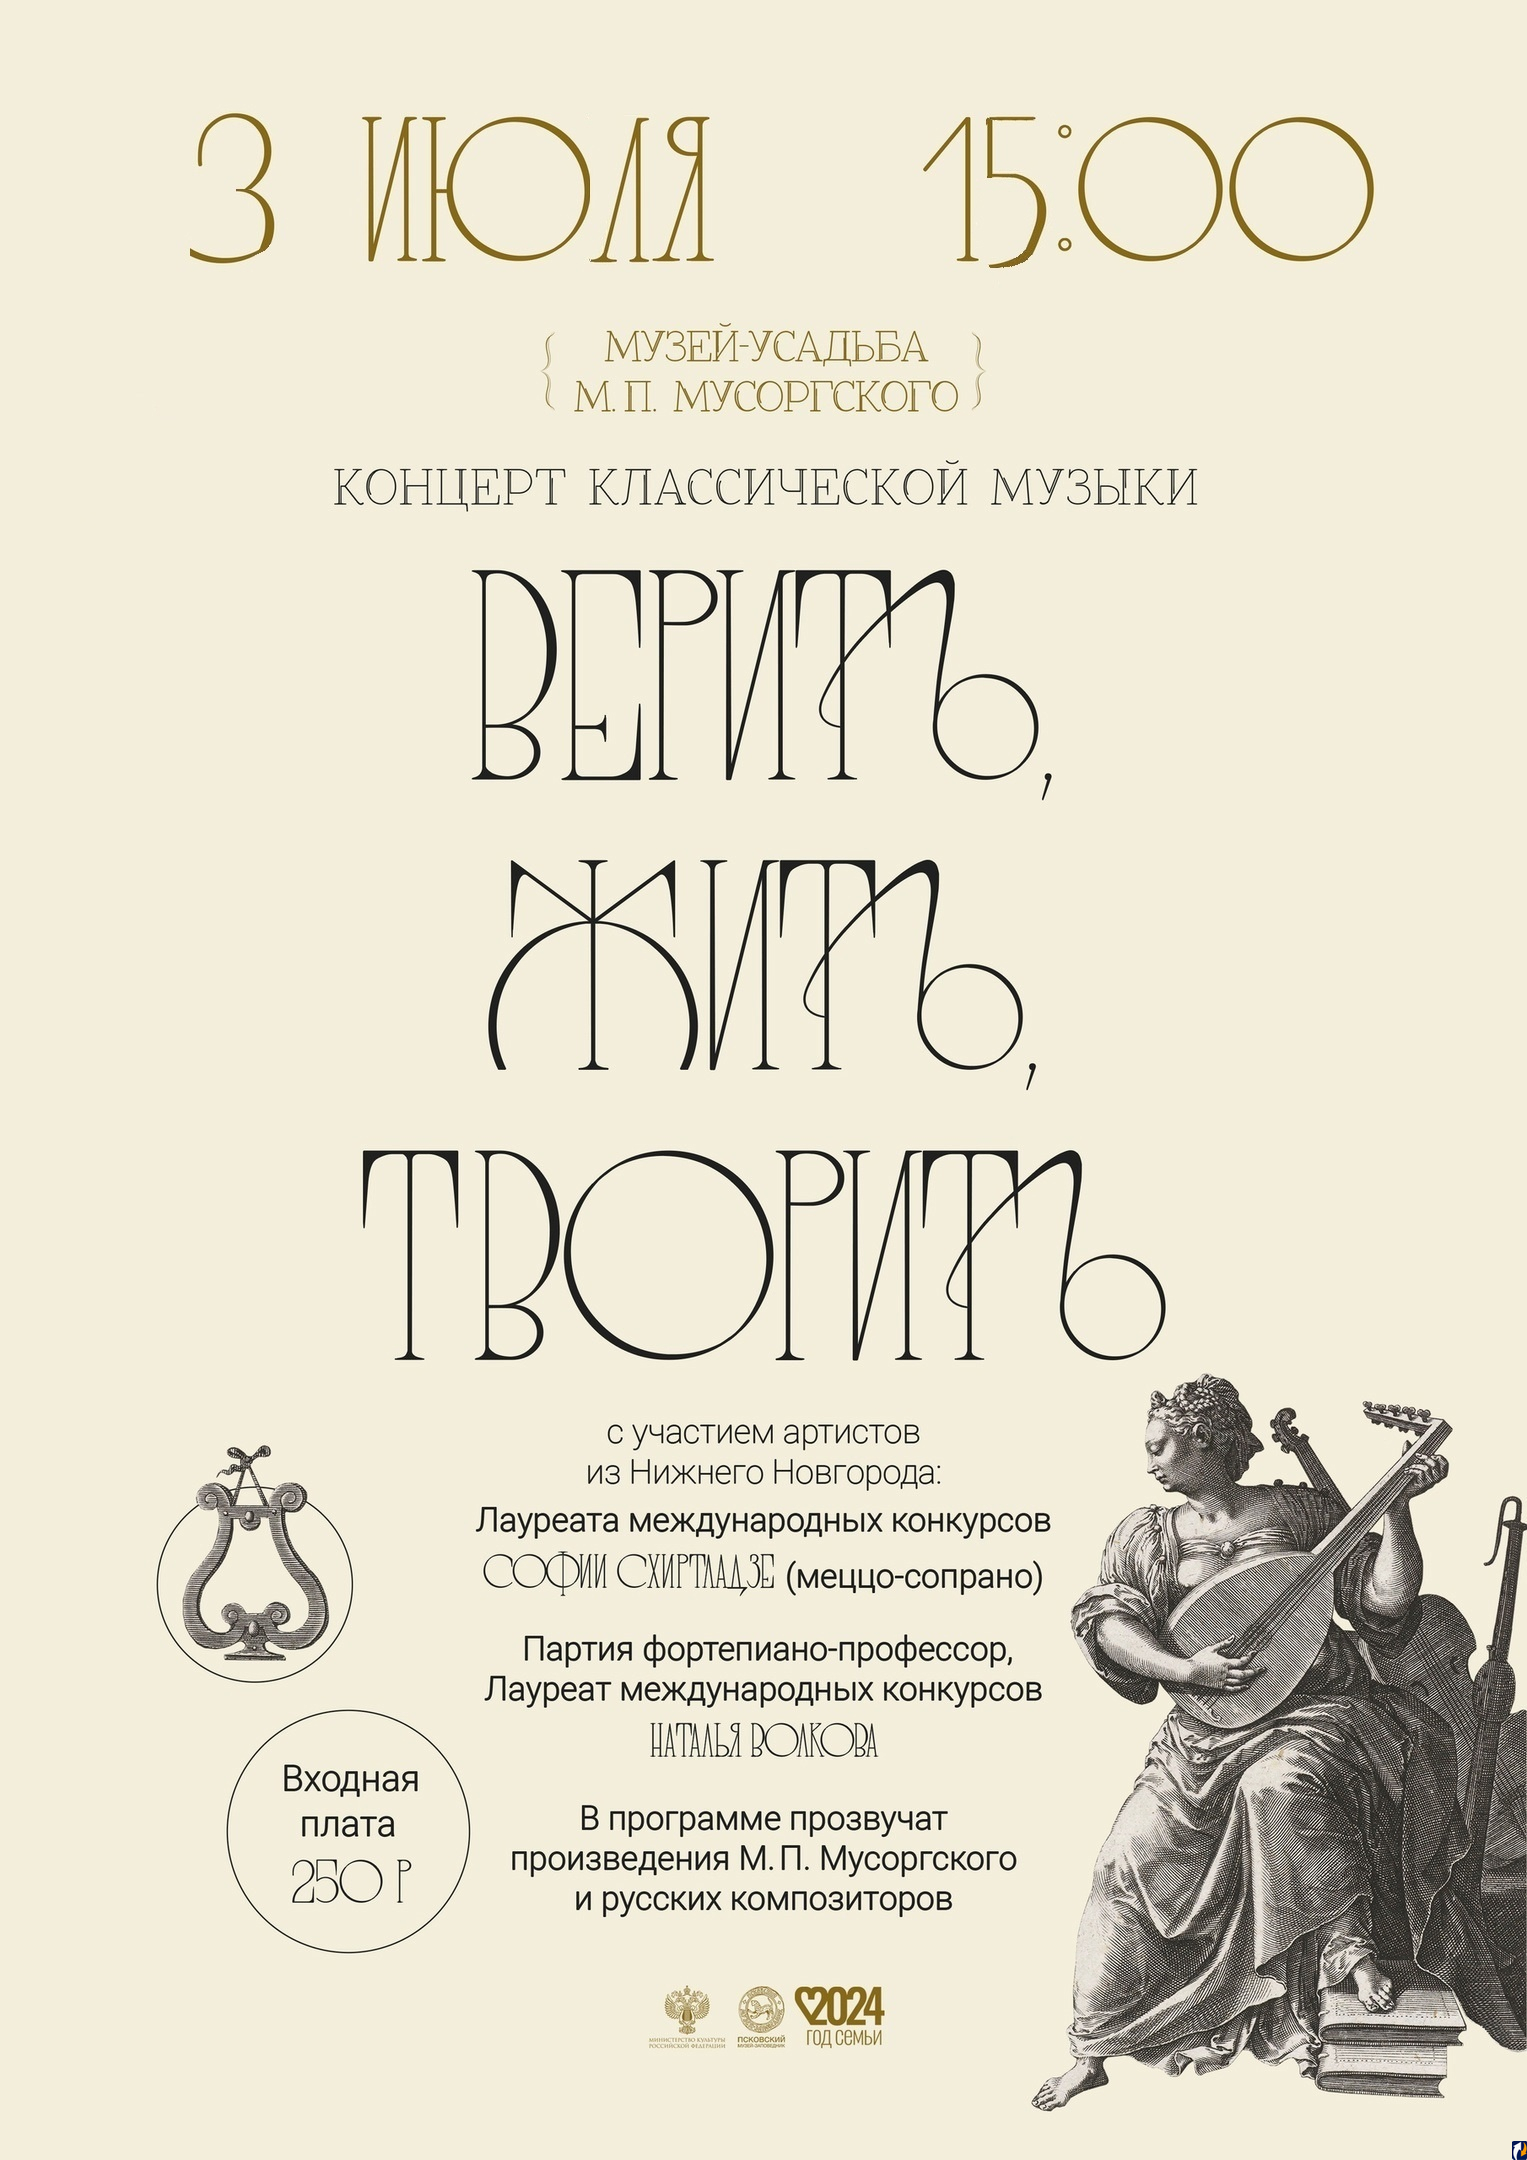 Концерт классической музыки пройдет в усадьбе М.П. Мусоргского